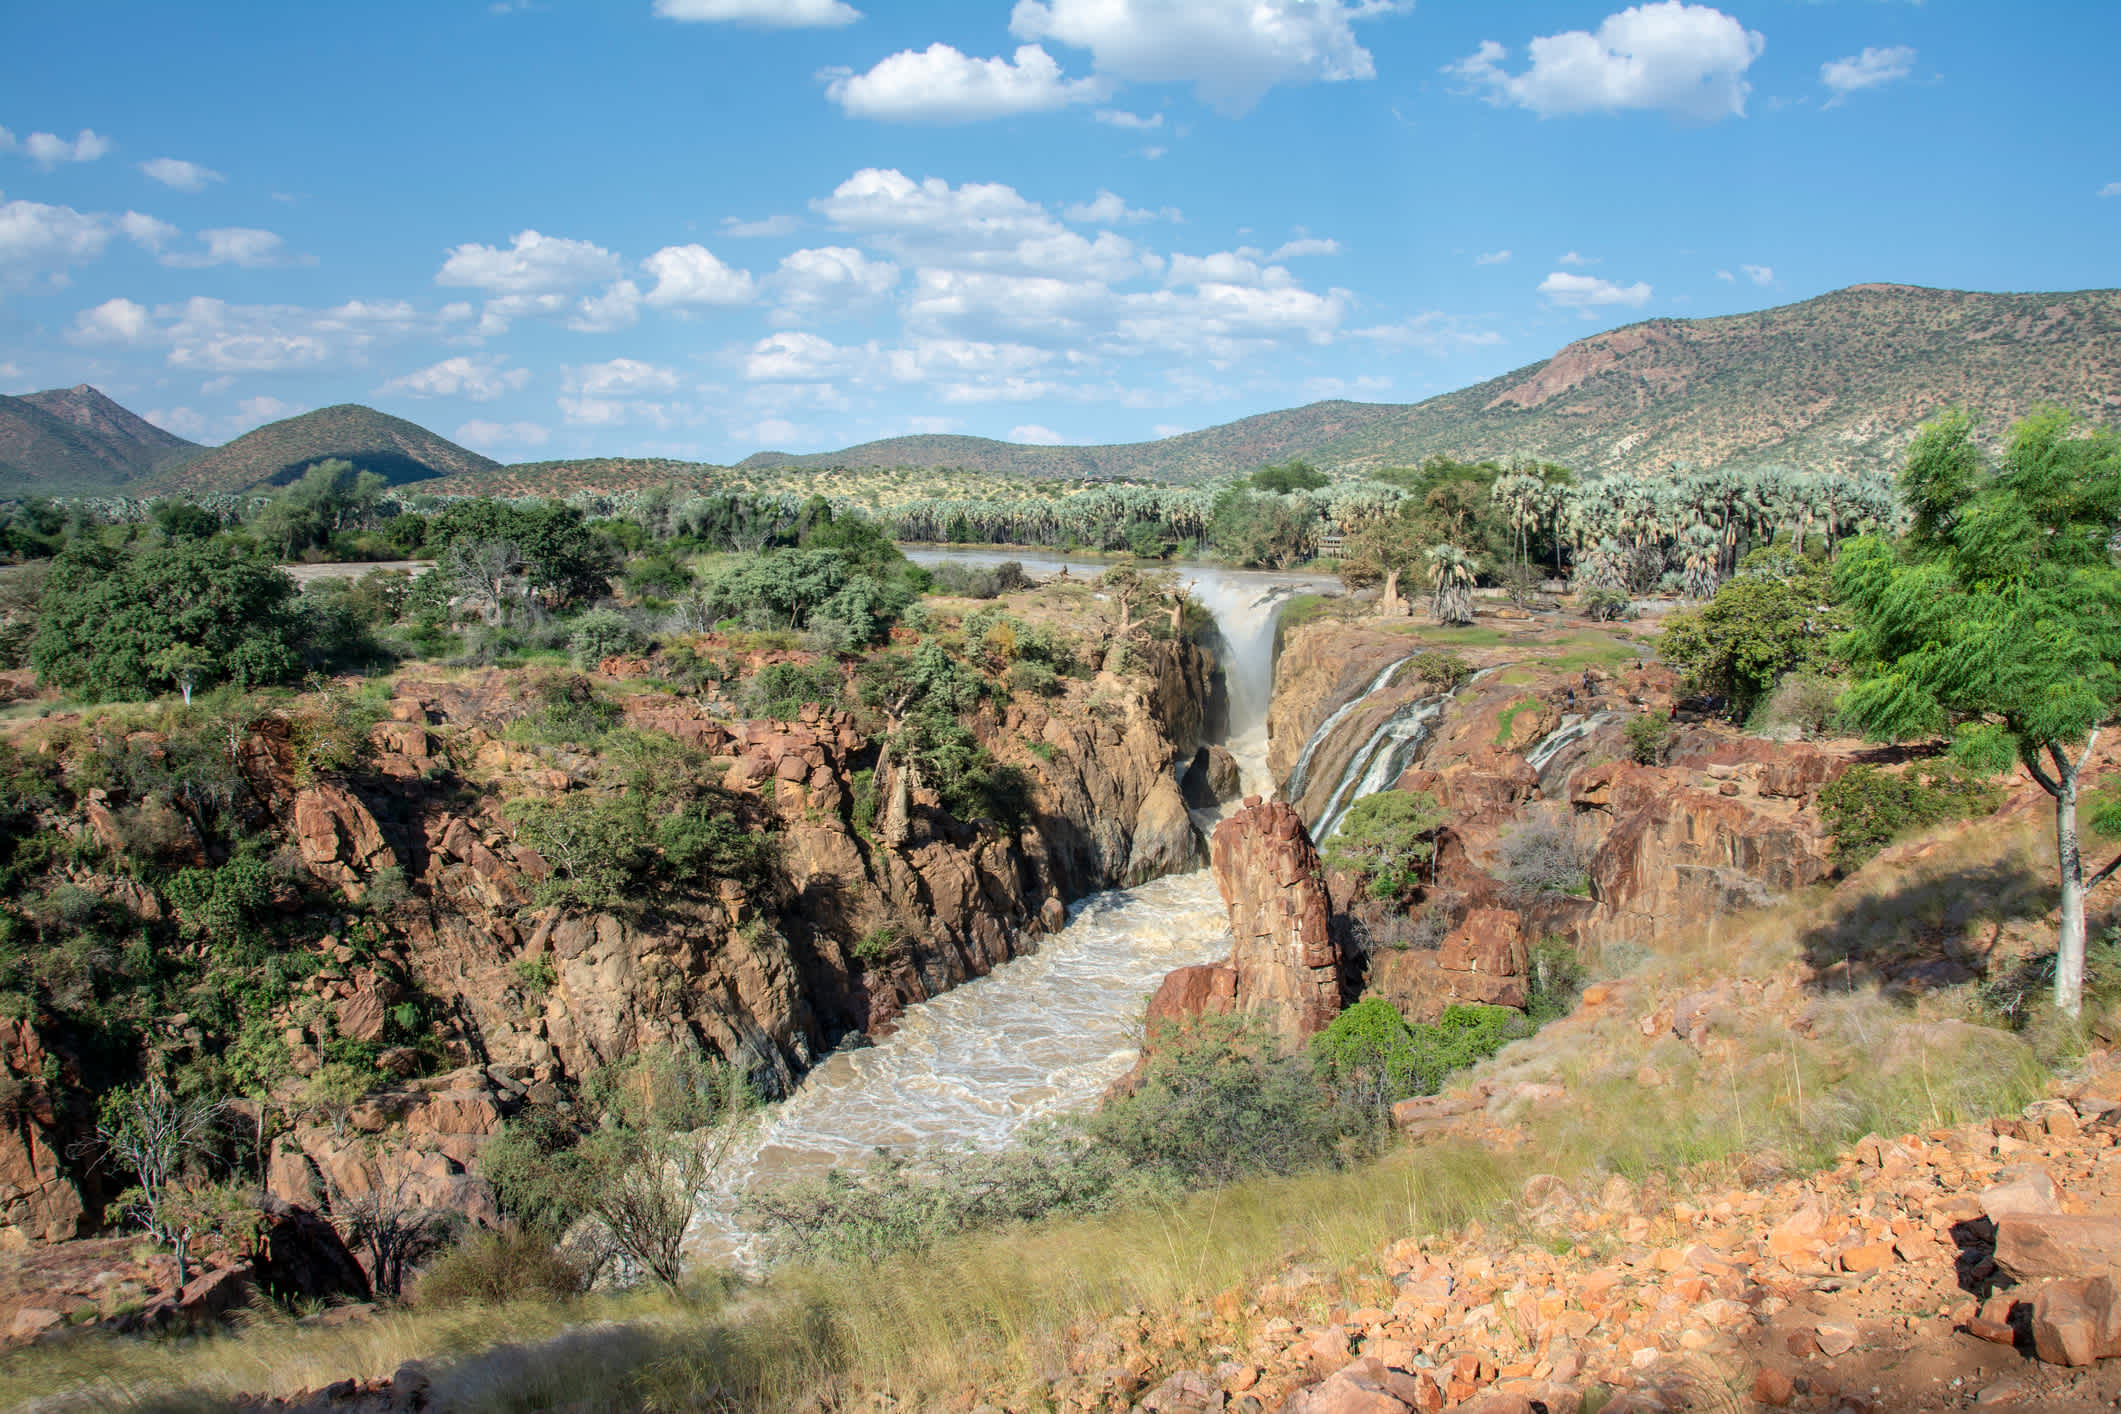 Les chutes d'Epupa, sur la route entre le Kaokoland et le Damaraland que vous pourrez découvrir pendant votre voyage en Namibie